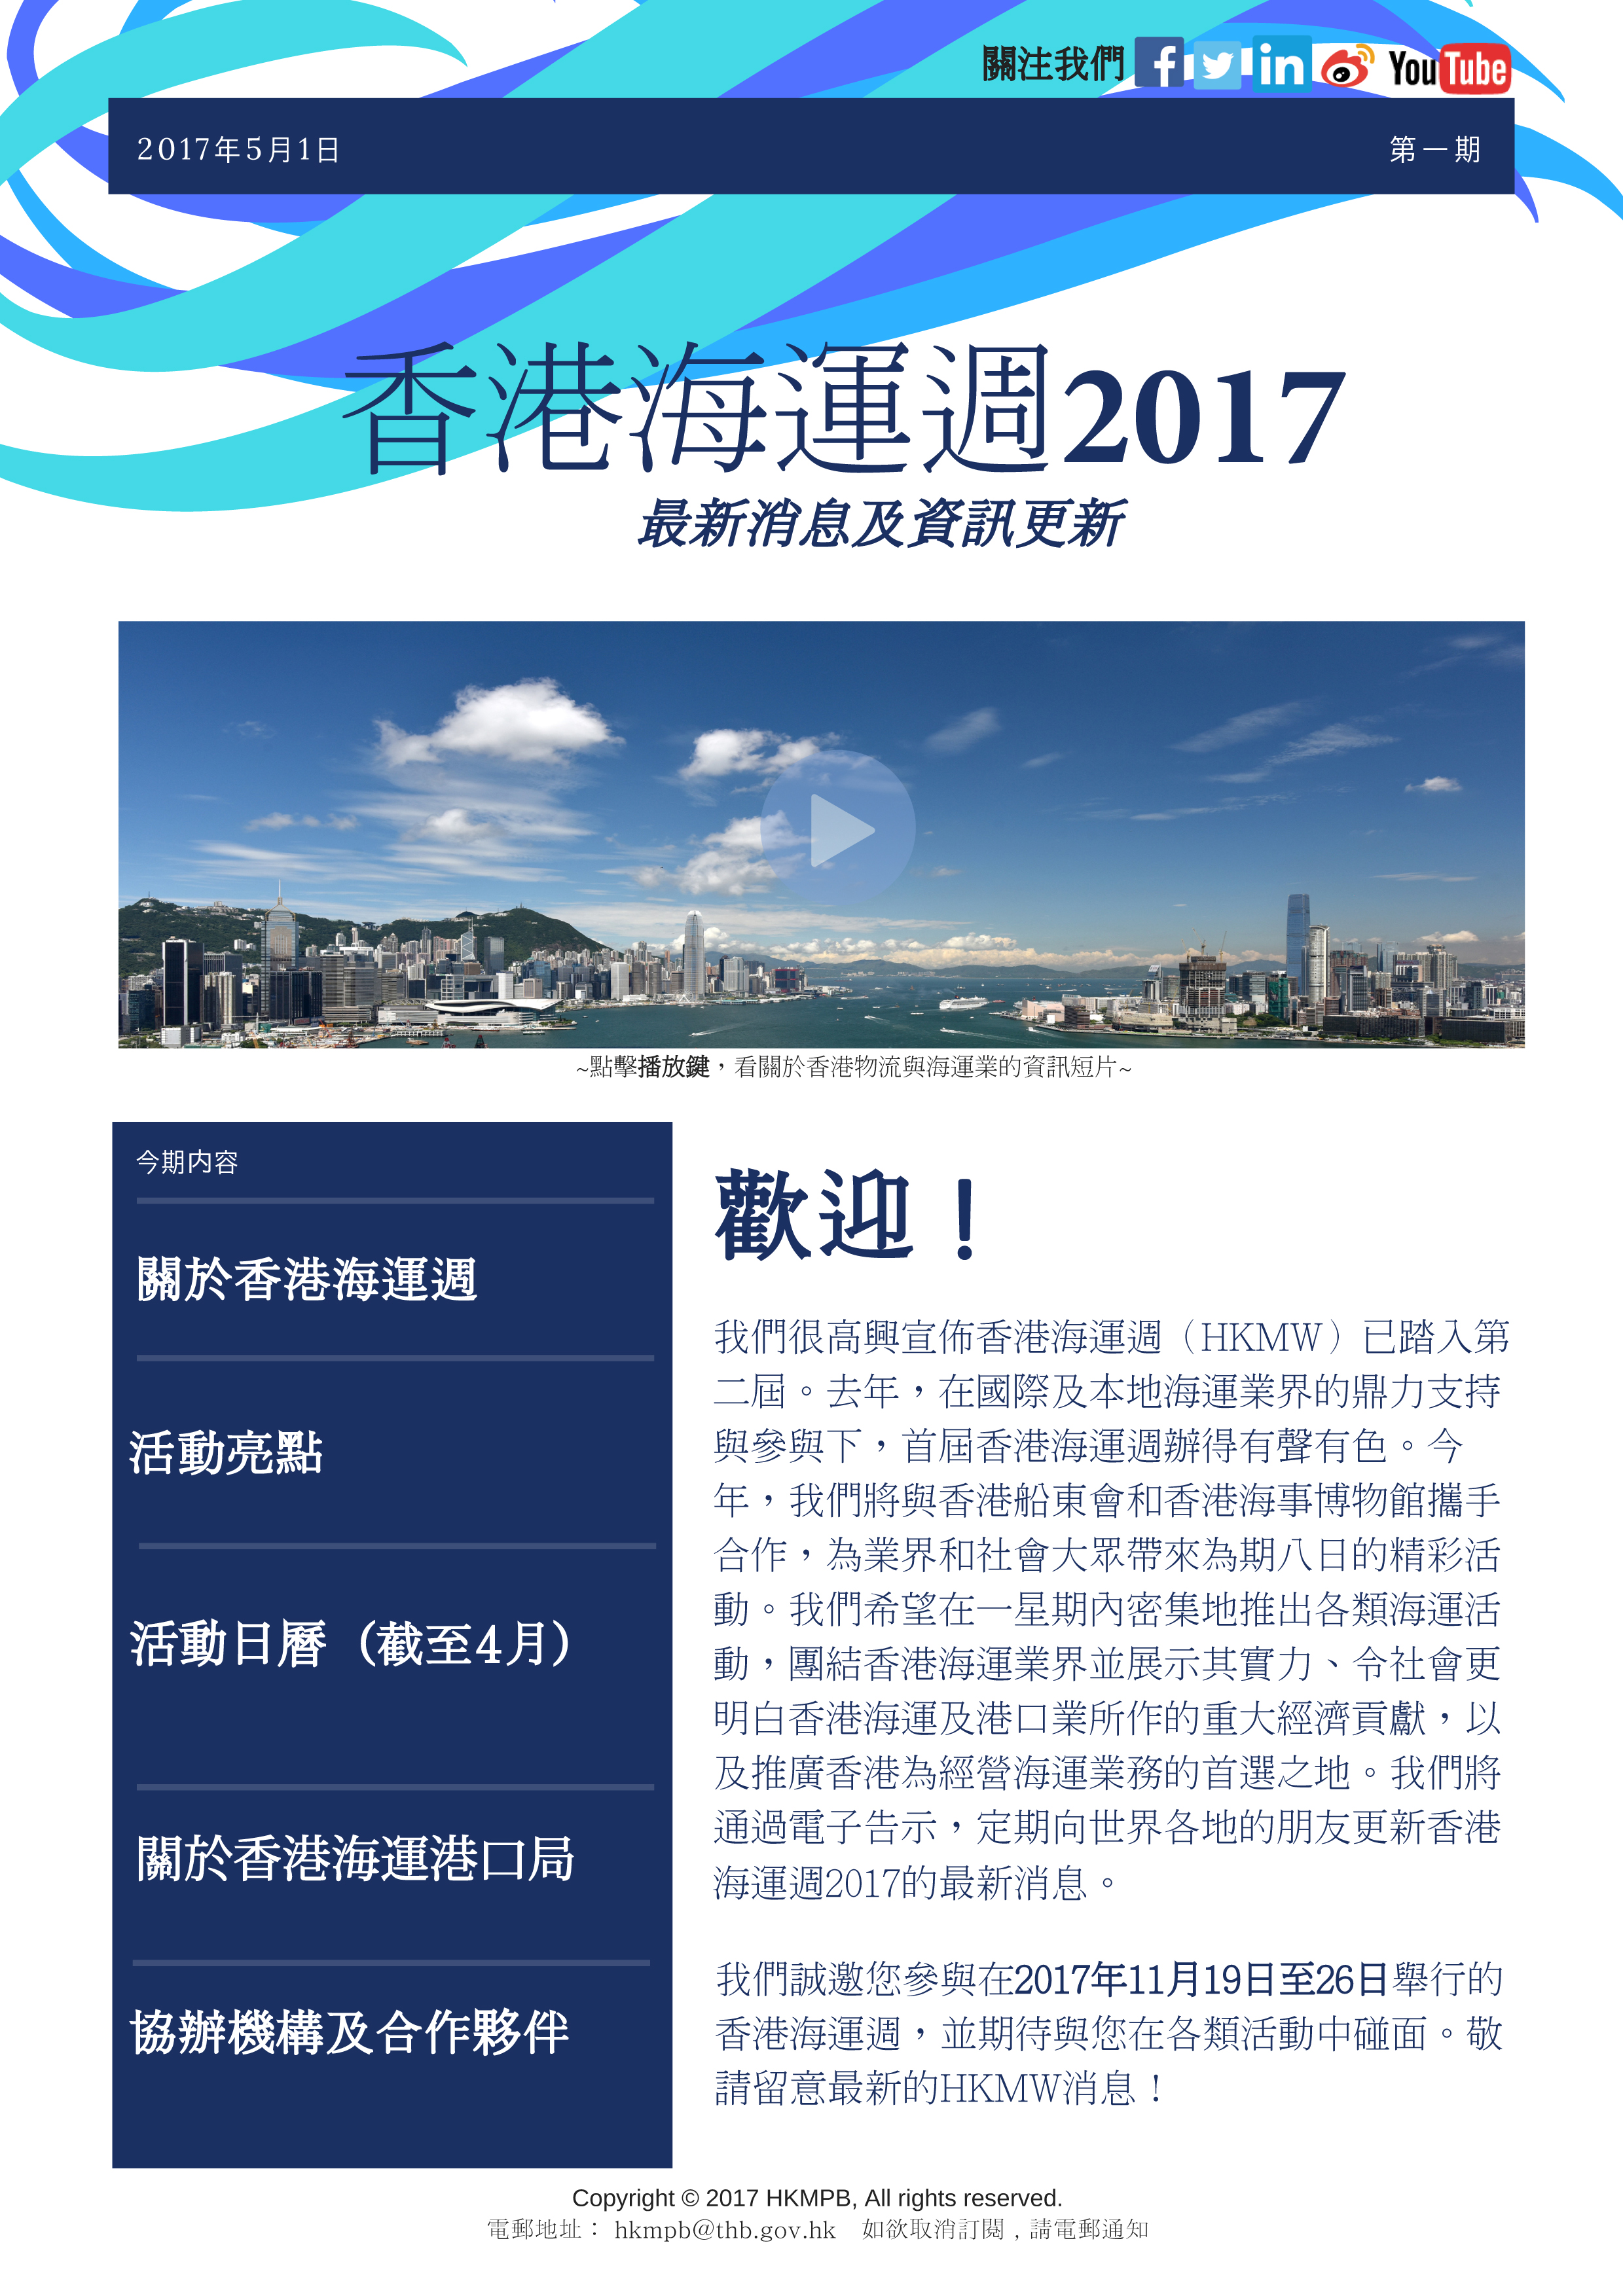 香港海運週2017 電子簡報第1期